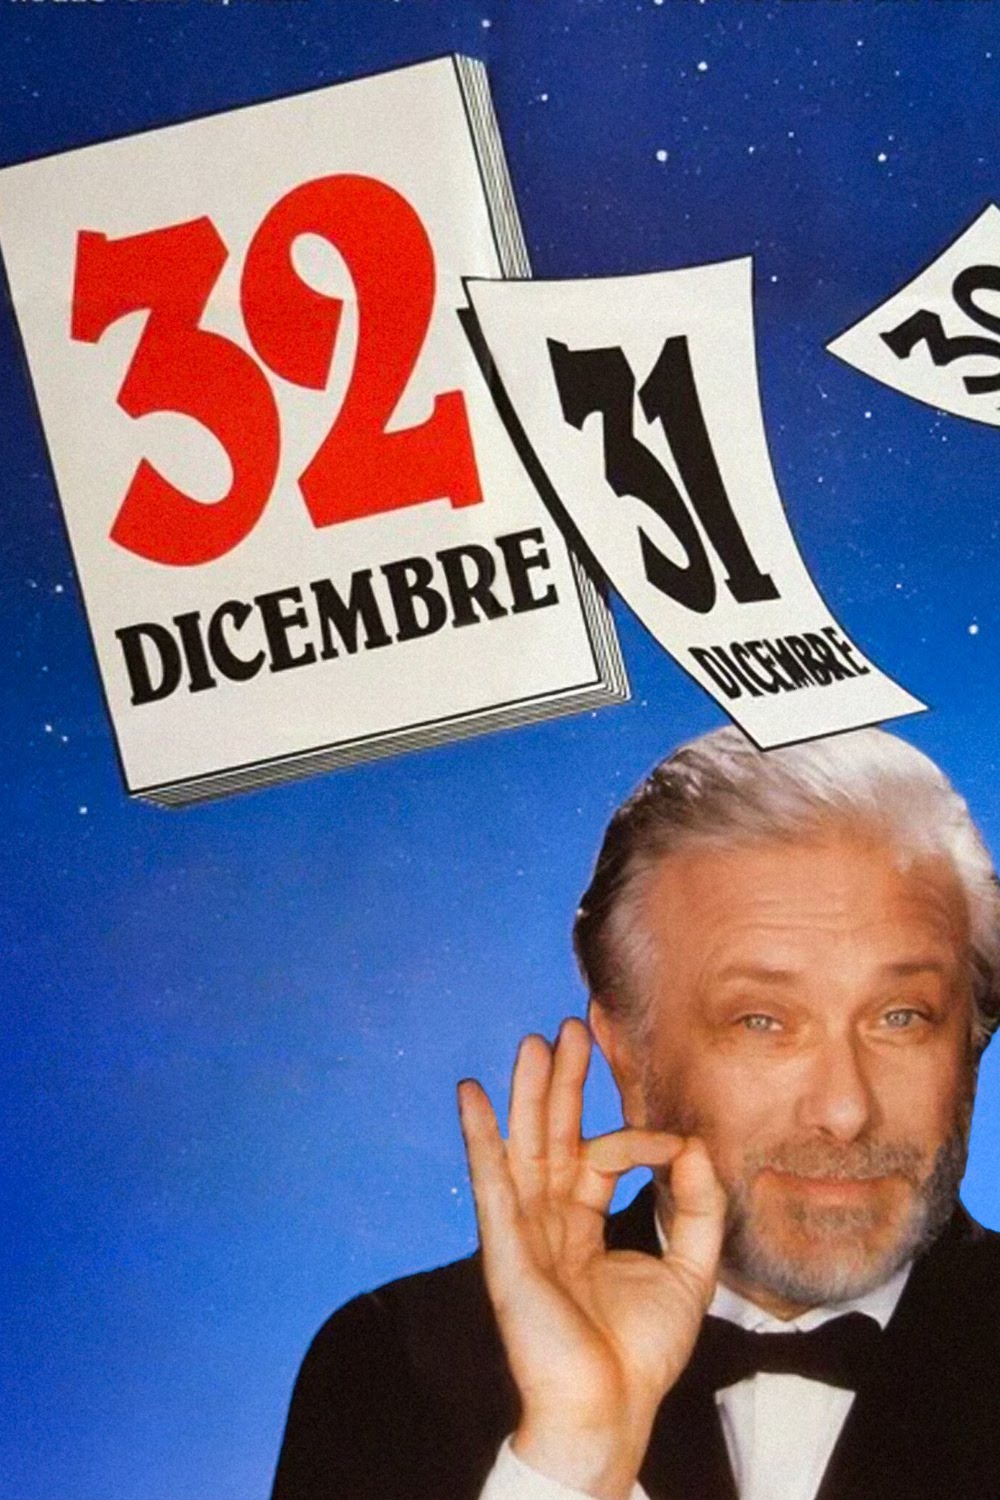 32 Dicembre [HD] (1988)